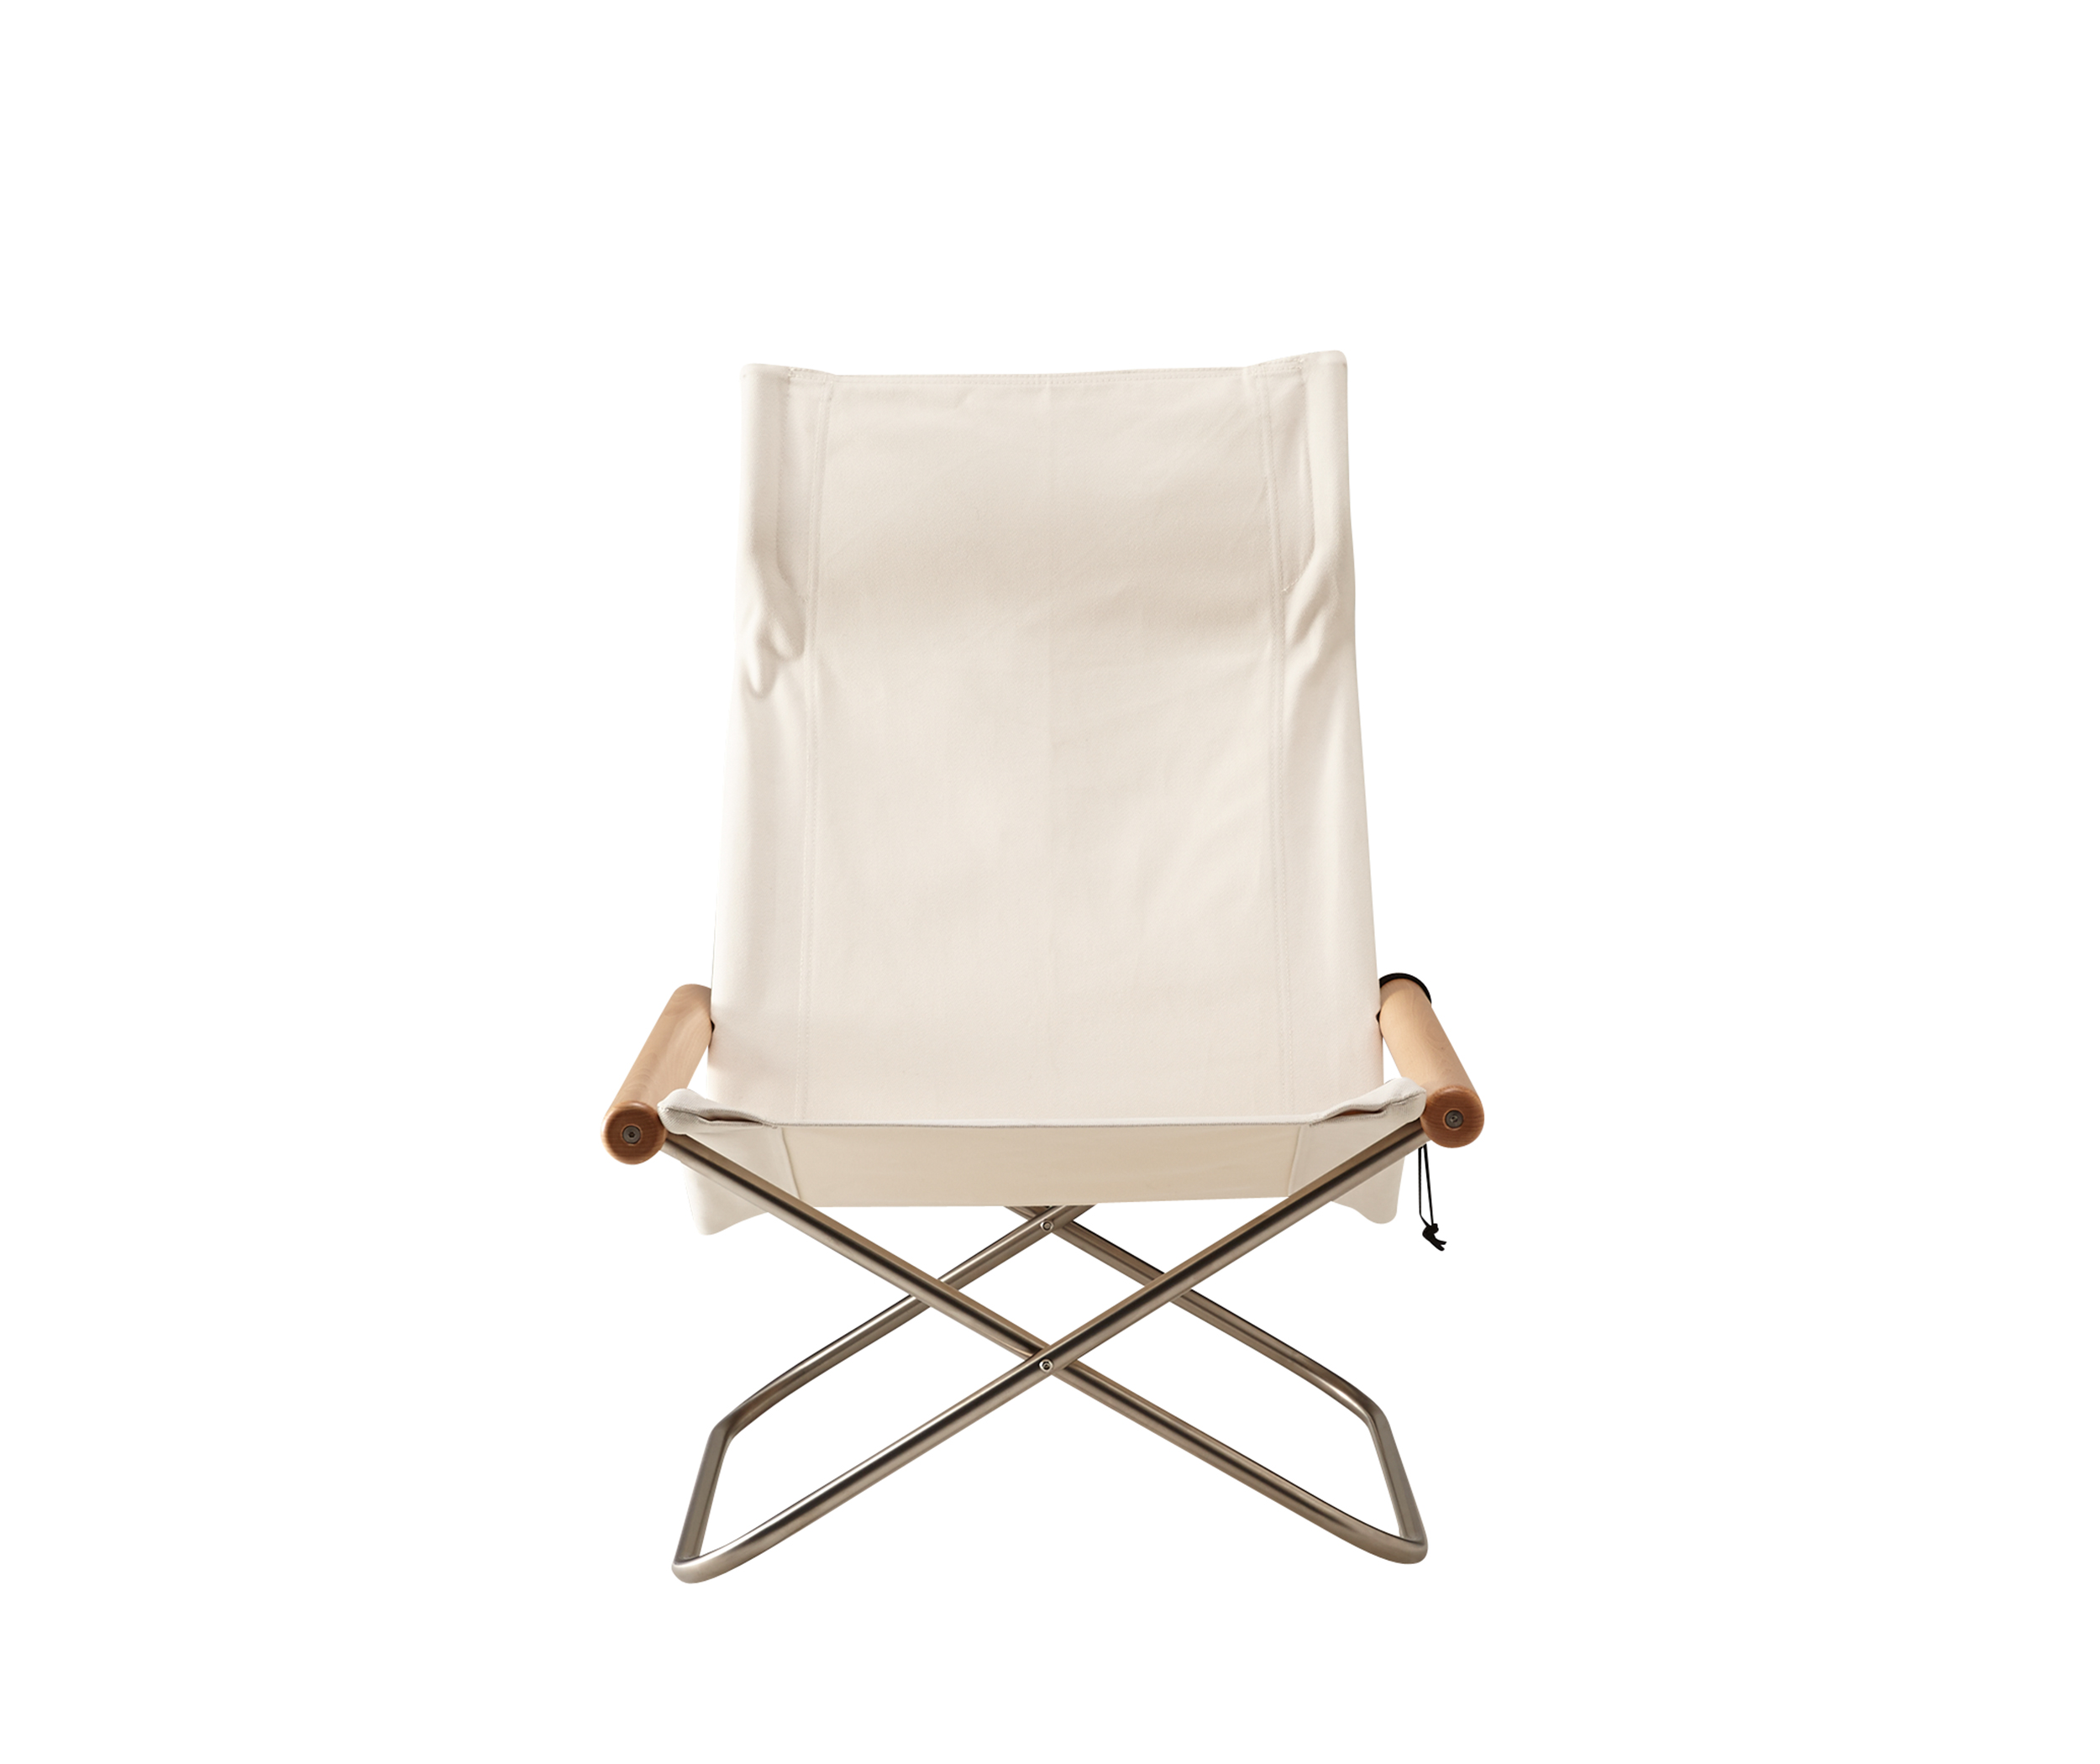 NychairX ニーチェア ナチュラル/ホワイト 折りたたみイス 椅子